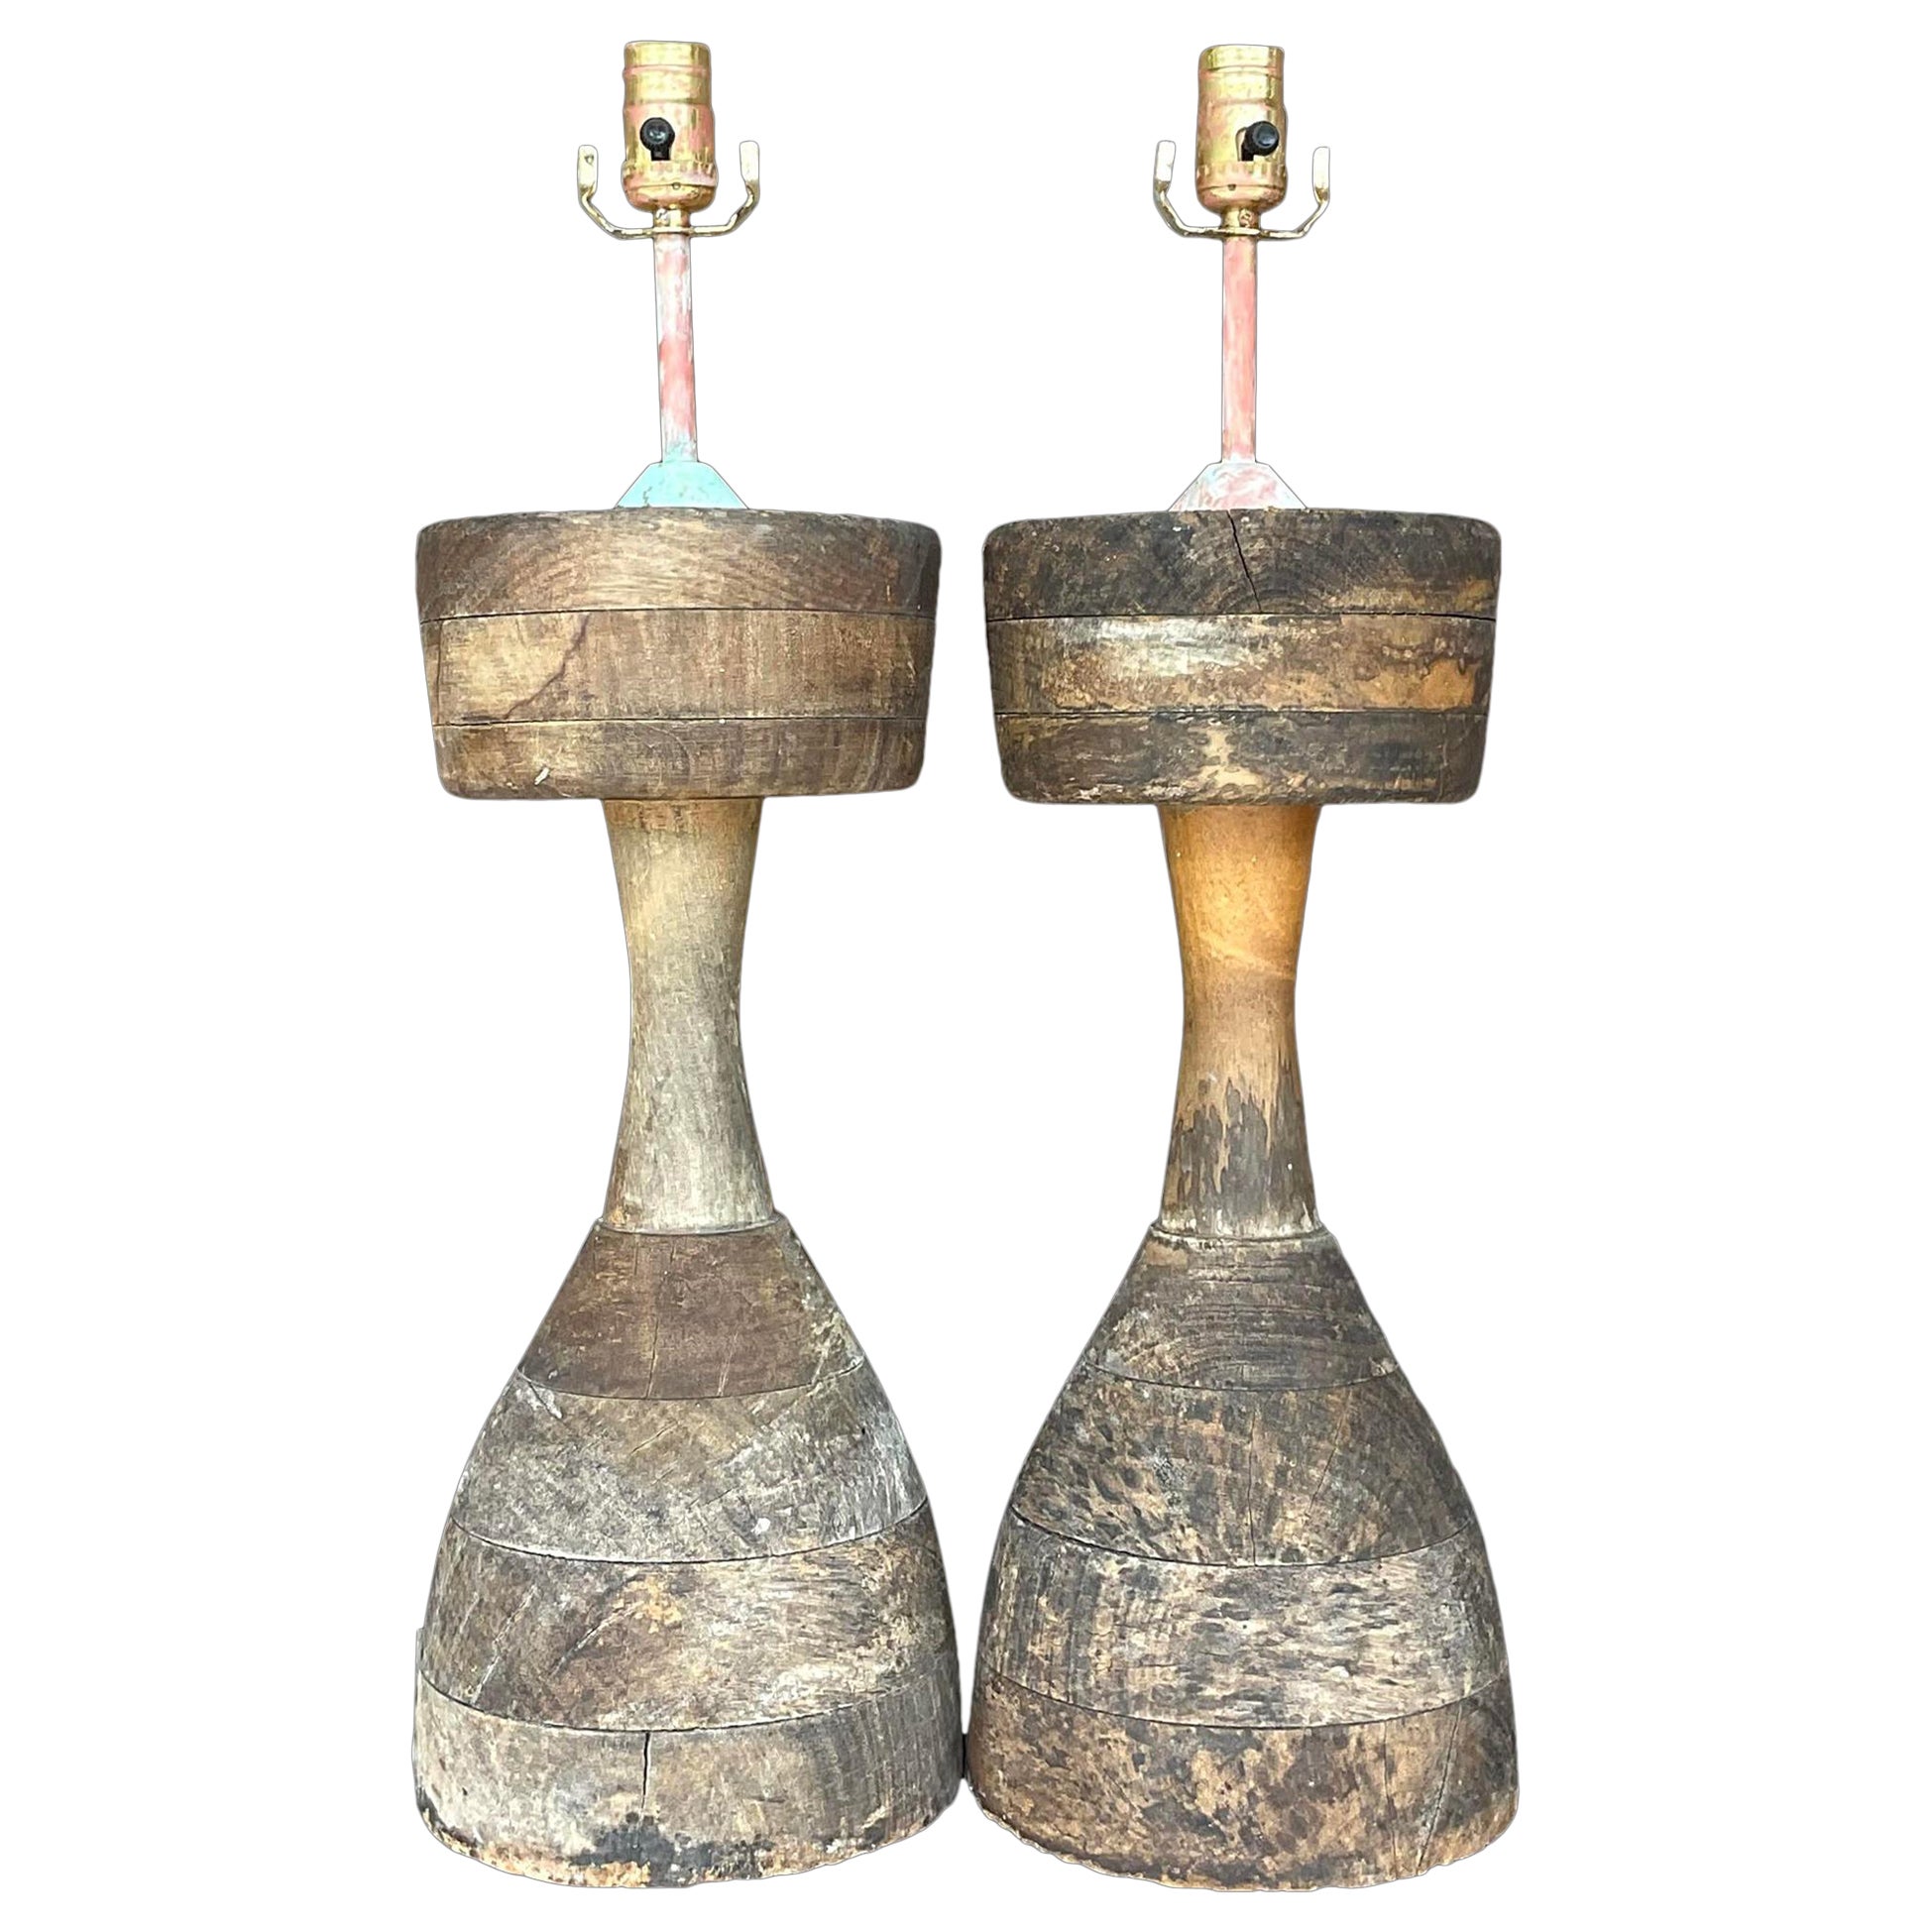 Vintage Boho gestapelt Distressed Wood Lampen - ein Paar